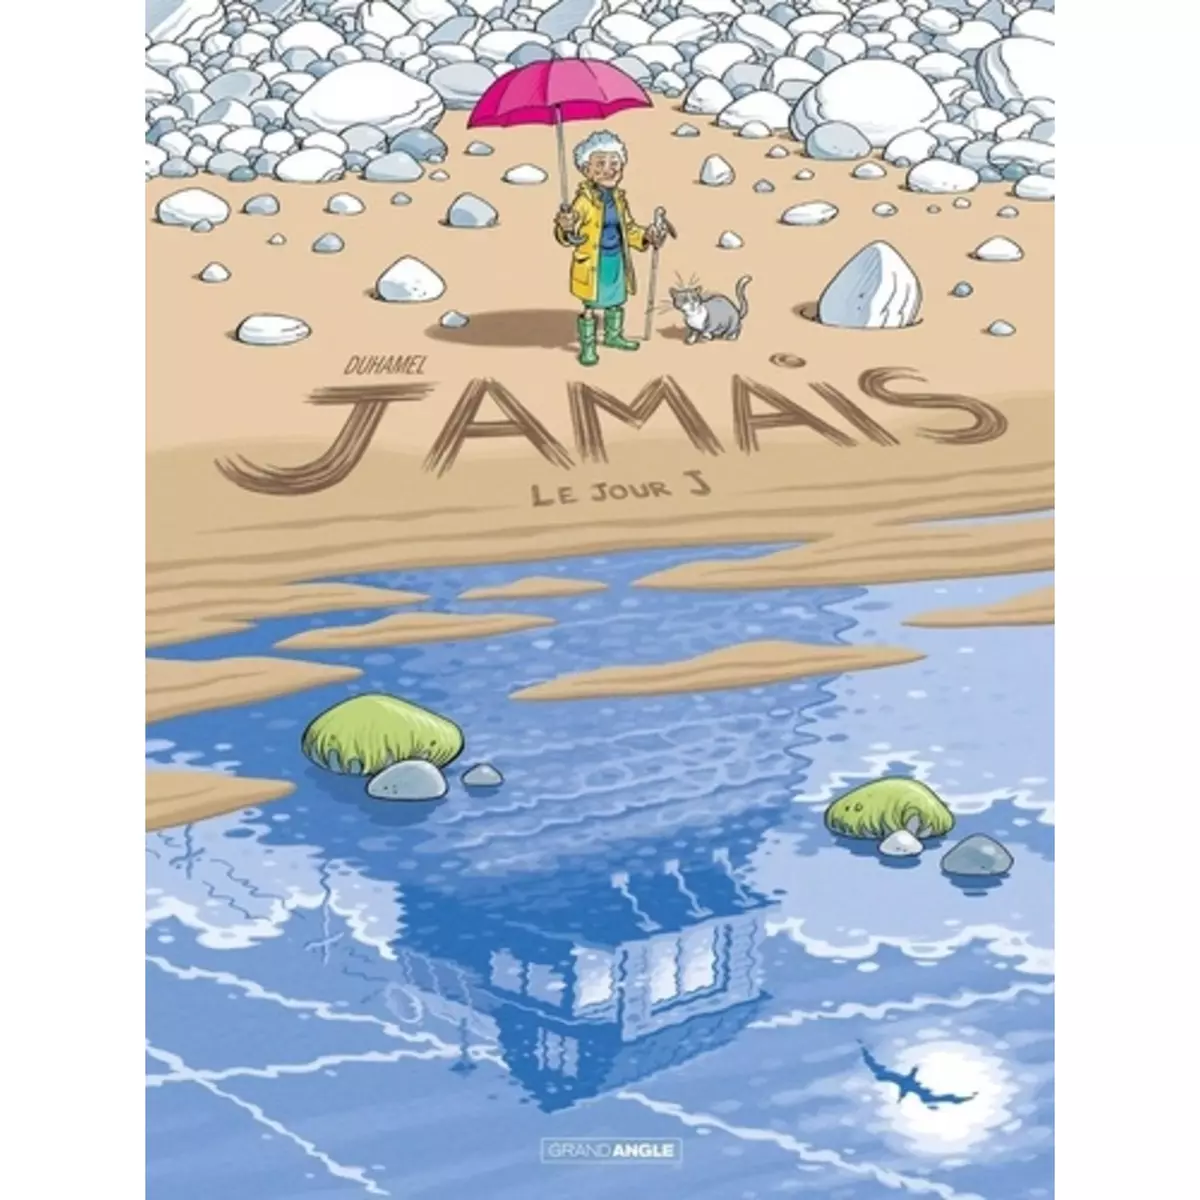  JAMAIS TOME 2 : LE JOUR J, Duhamel Bruno